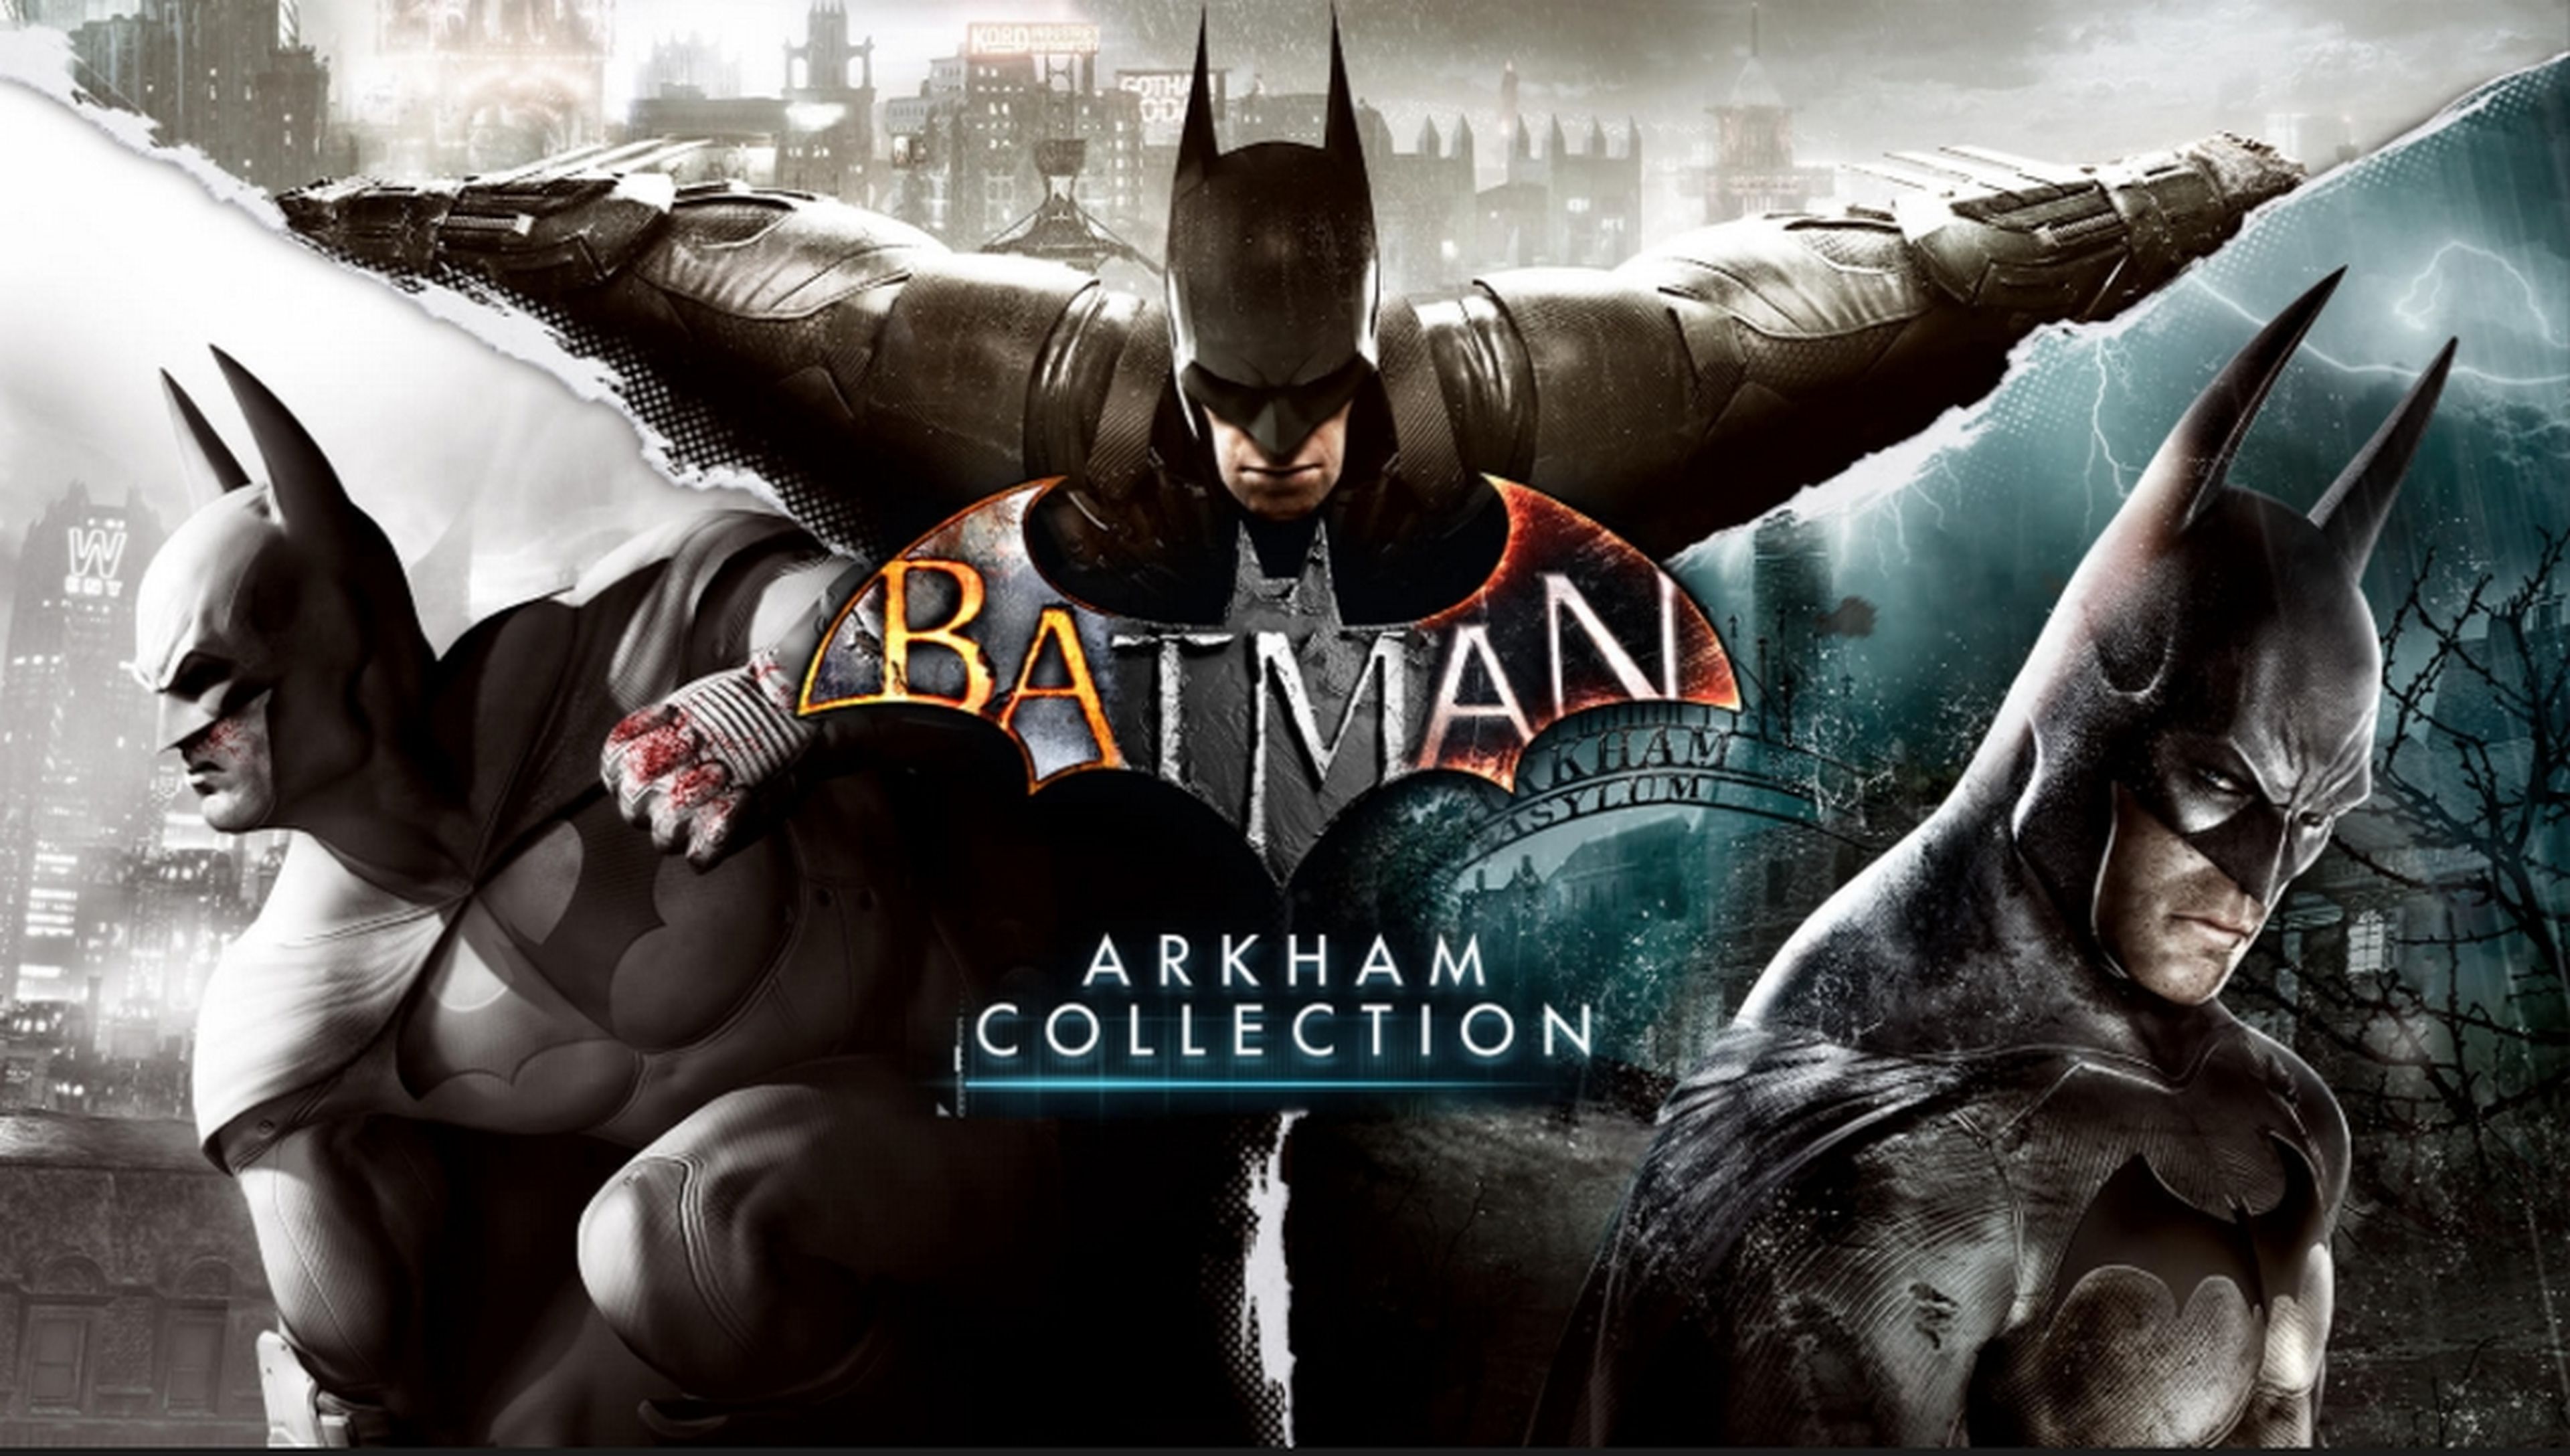 Descarga gratis 6 juegos de Batman y quédatelos para siempre | Computer Hoy